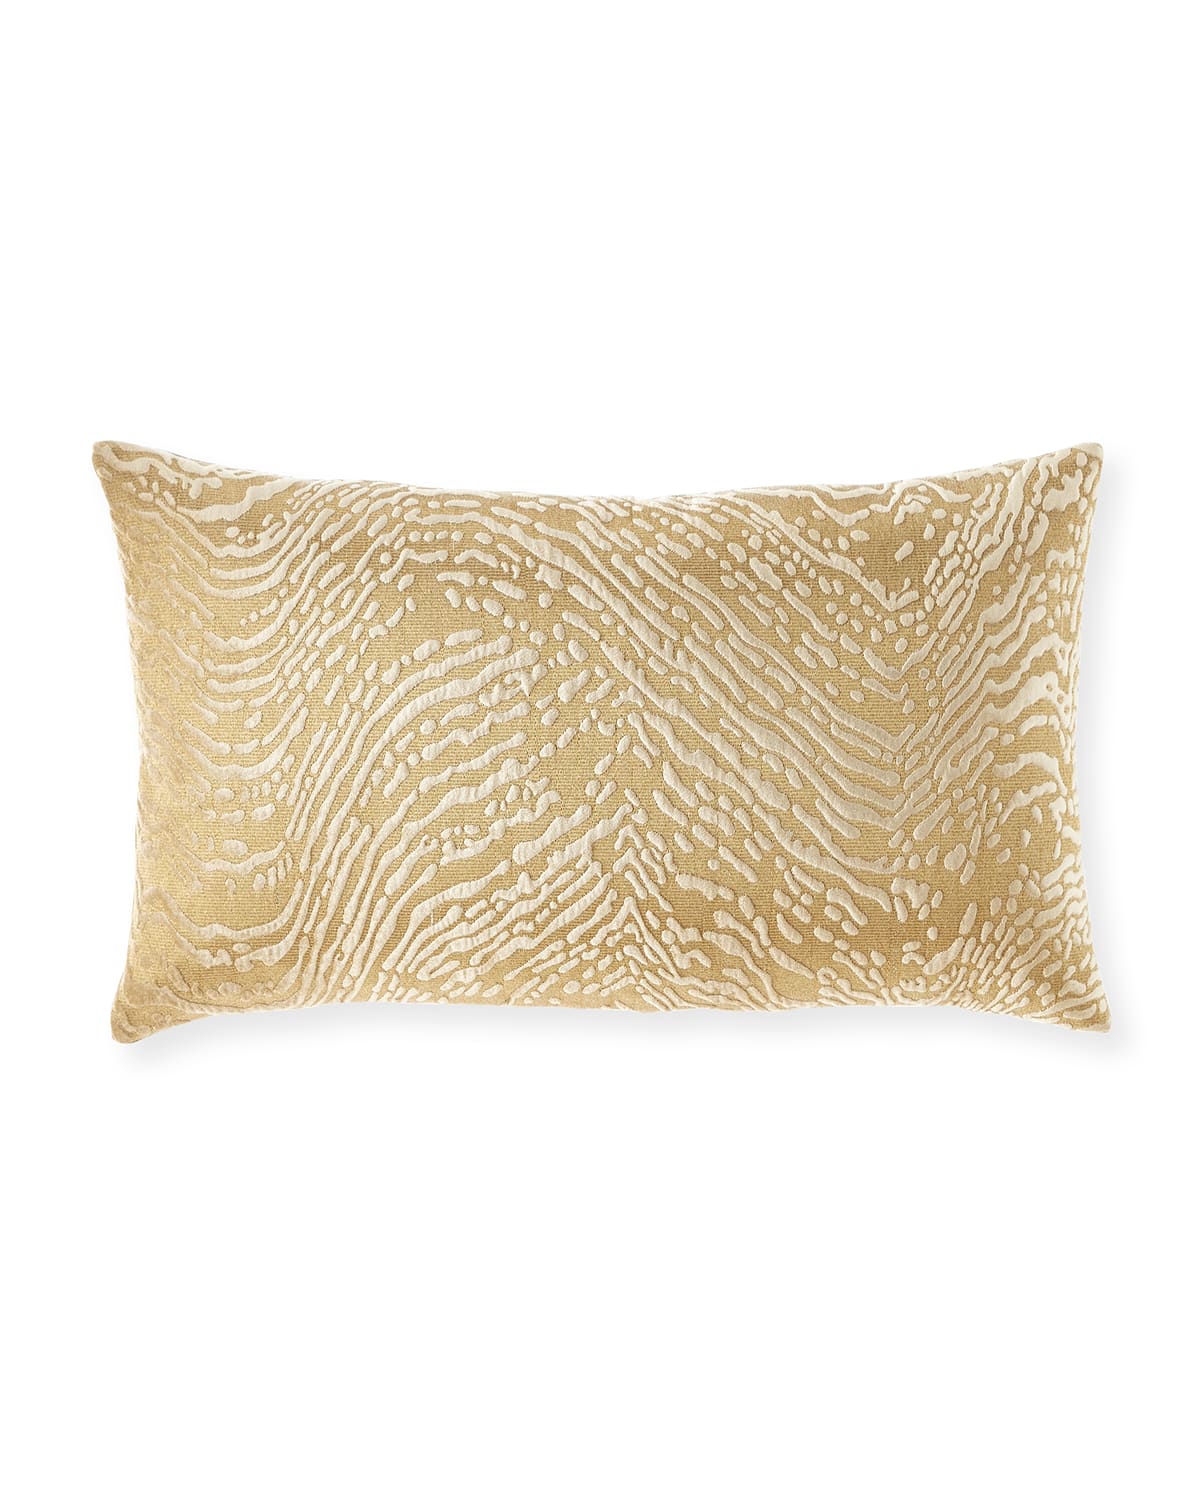 Bahar Textured Lumbar Decorative Pillow